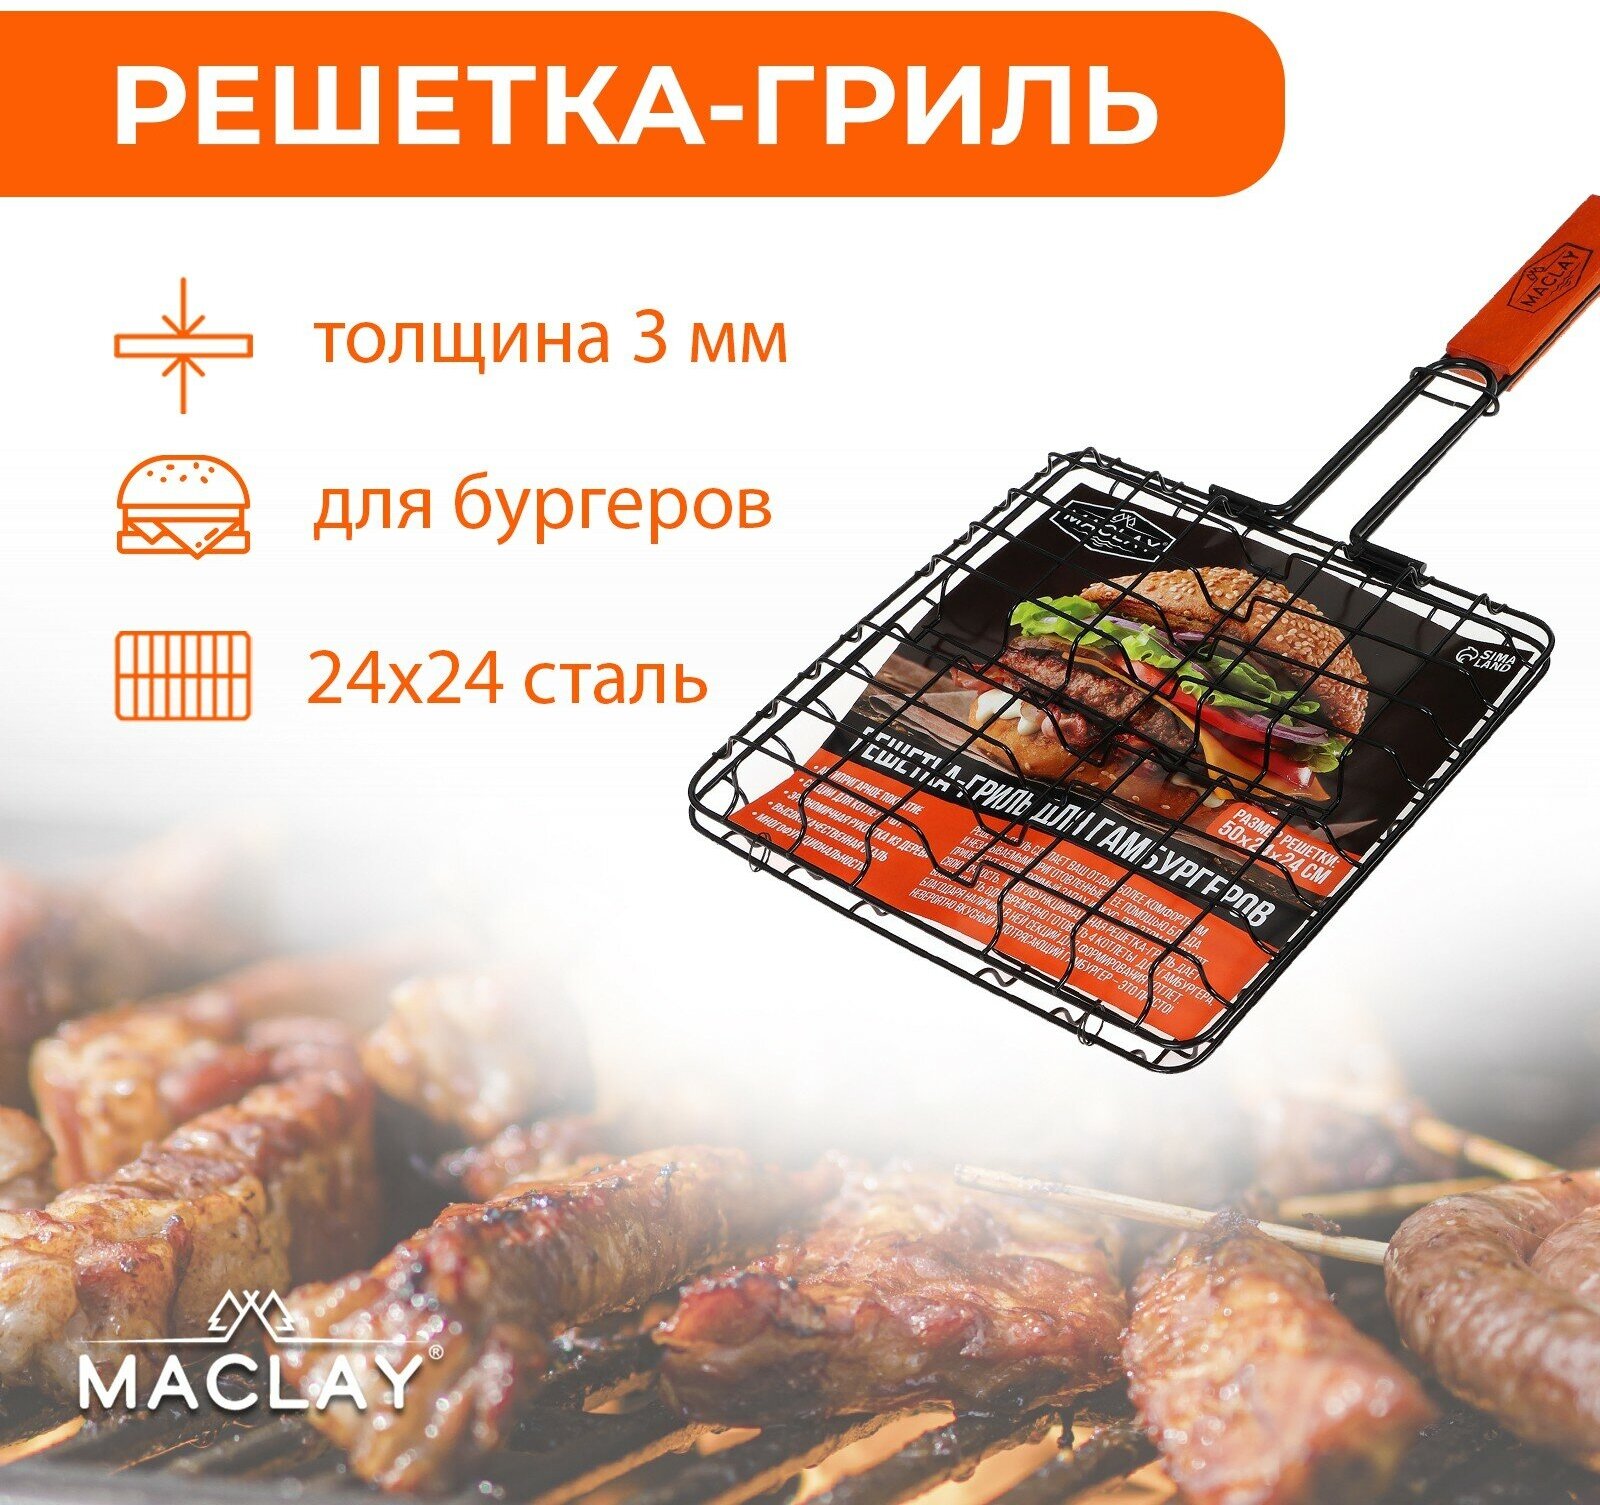 Решетка-гриль Maclay, для приготовления бургеров, размер 50 x 24 x 24 x 5 см, антипригарная